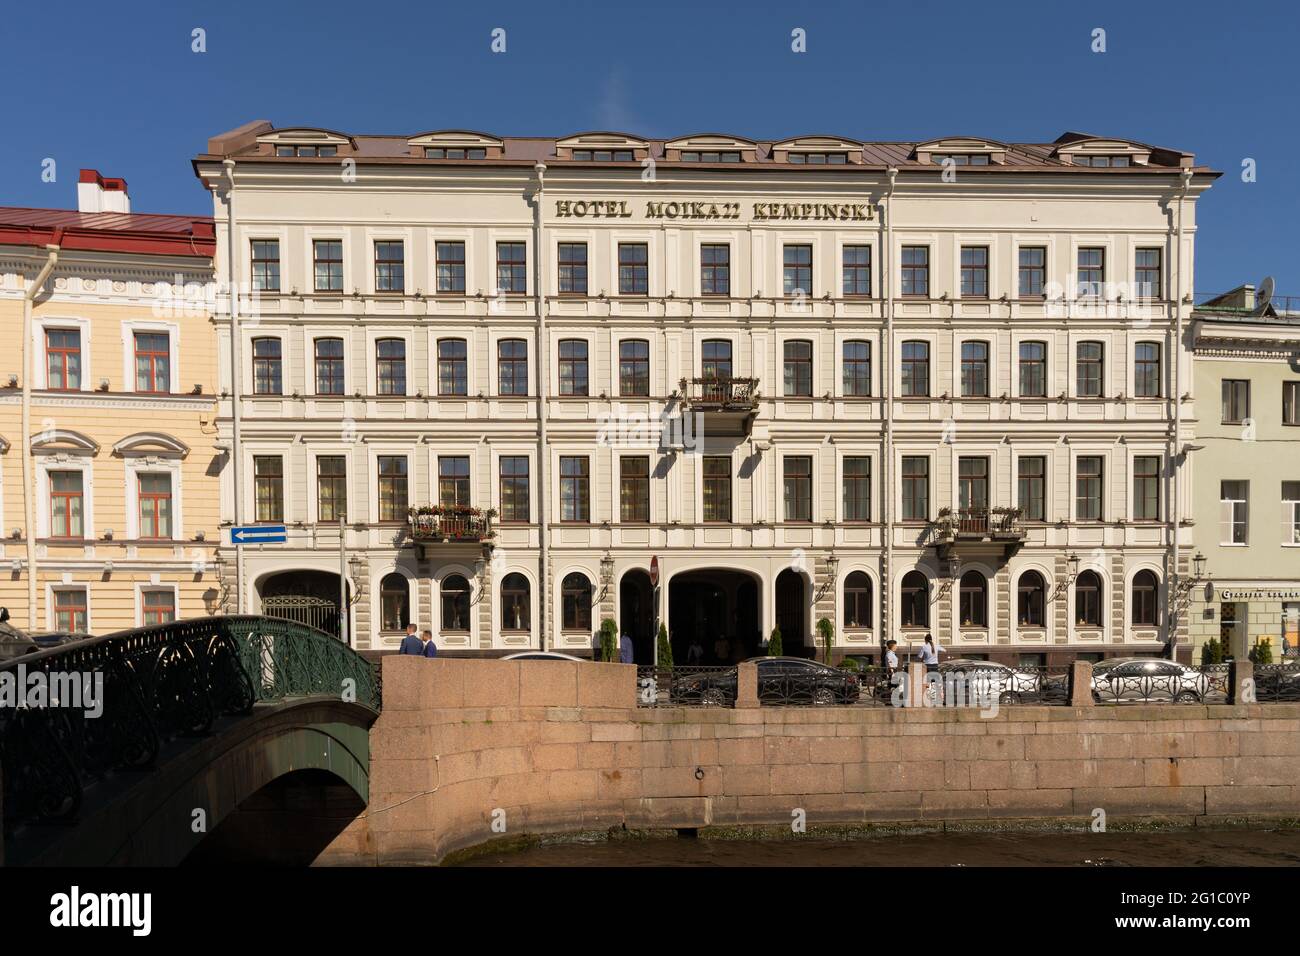 Fachada de 5 estrellas de lujo Kempinski Hotel Moika 22 situado en el centro histórico de San Petersburgo, Rusia Foto de stock